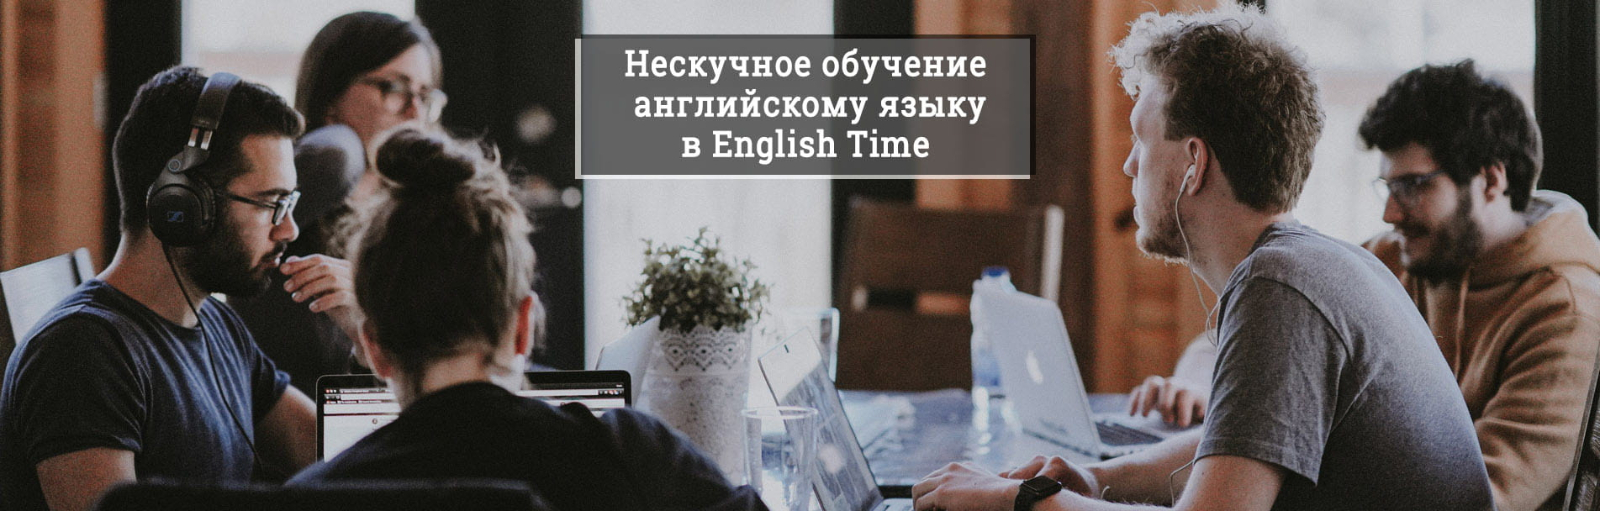 Нескучное обучение английскому языку в English Time